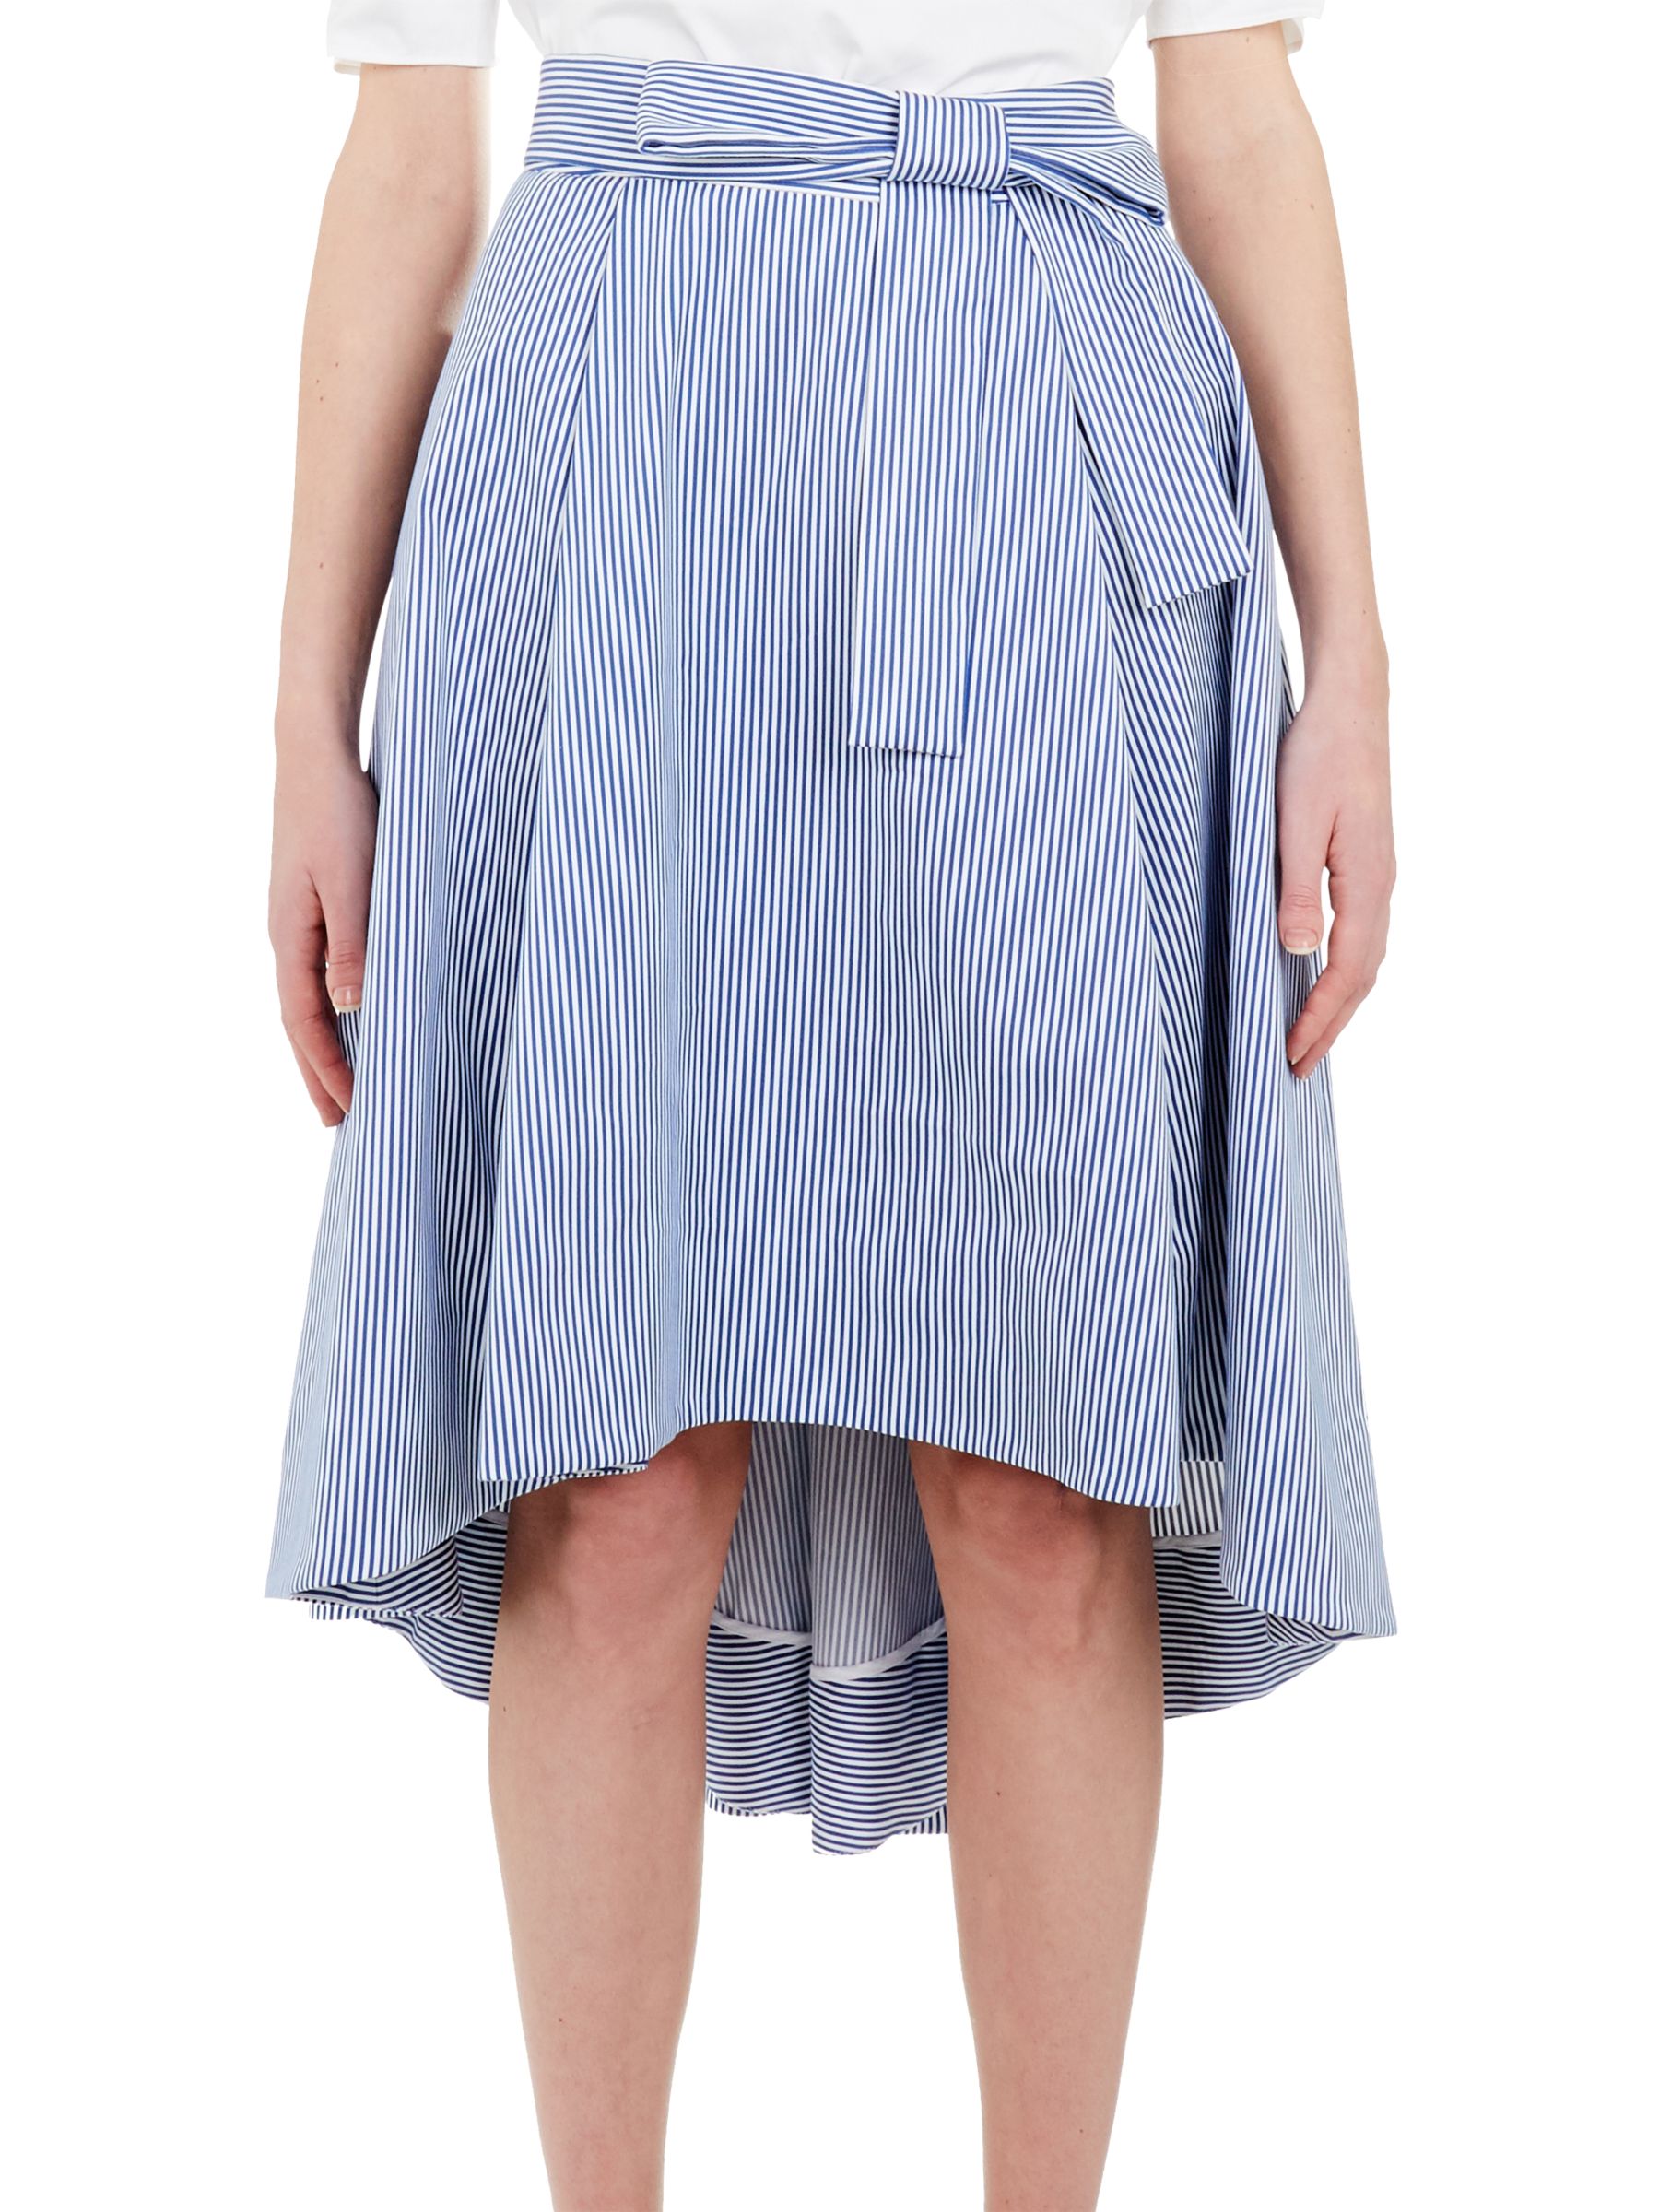 Ted Baker Stripe Drop Hem Cotton Skirt, White/Blue